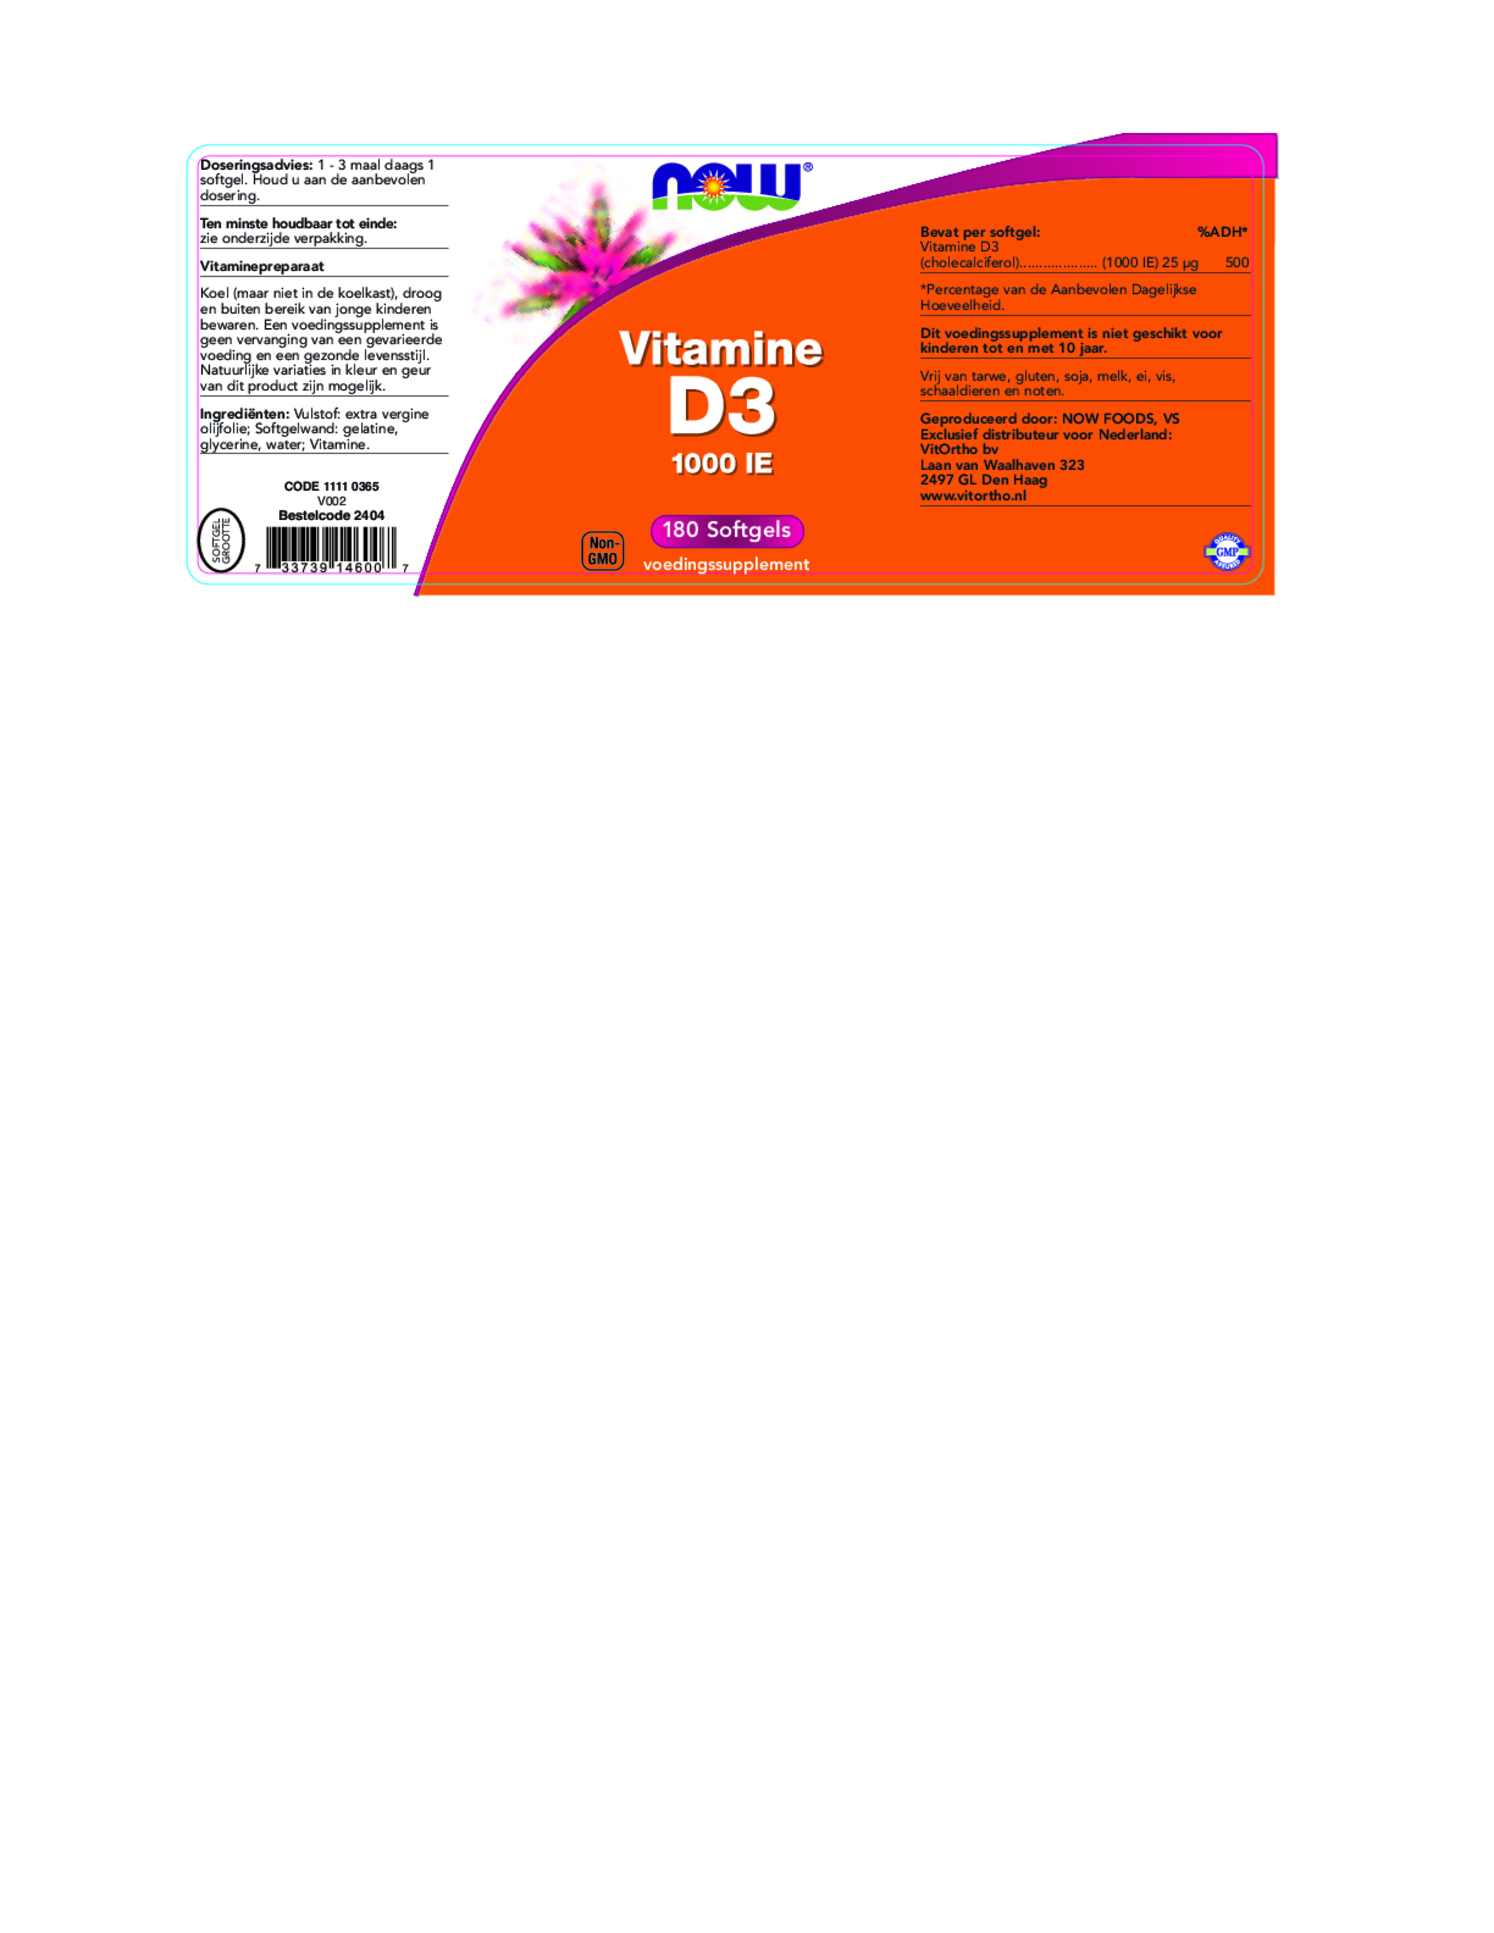 Vitamine D3 1000 IE Softgels afbeelding van document #1, etiket